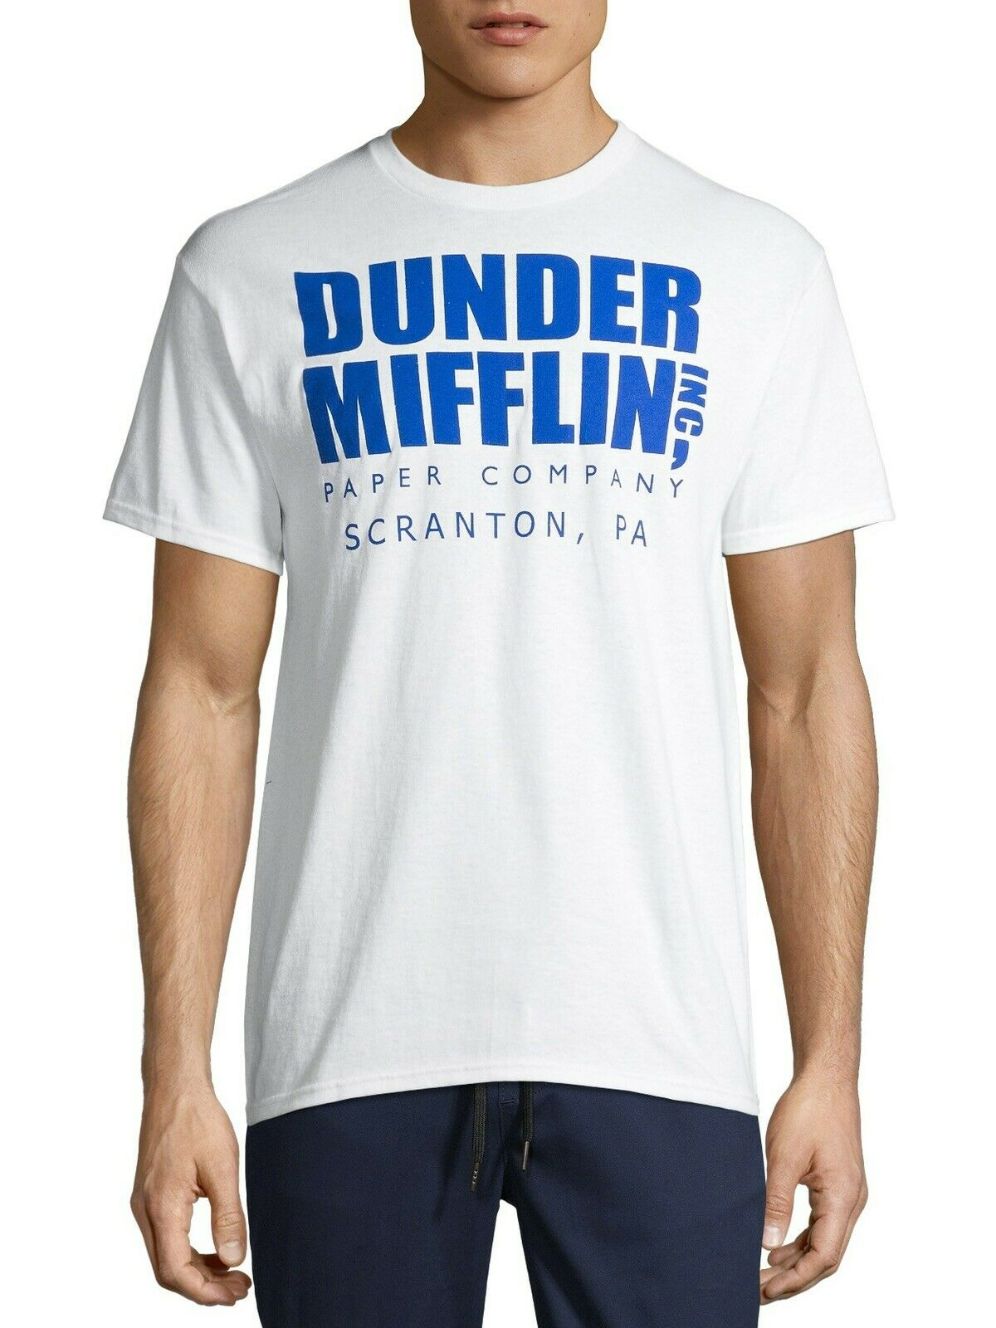 Dunder Mifflin Paper Company - The Office' Men's T-Shirt